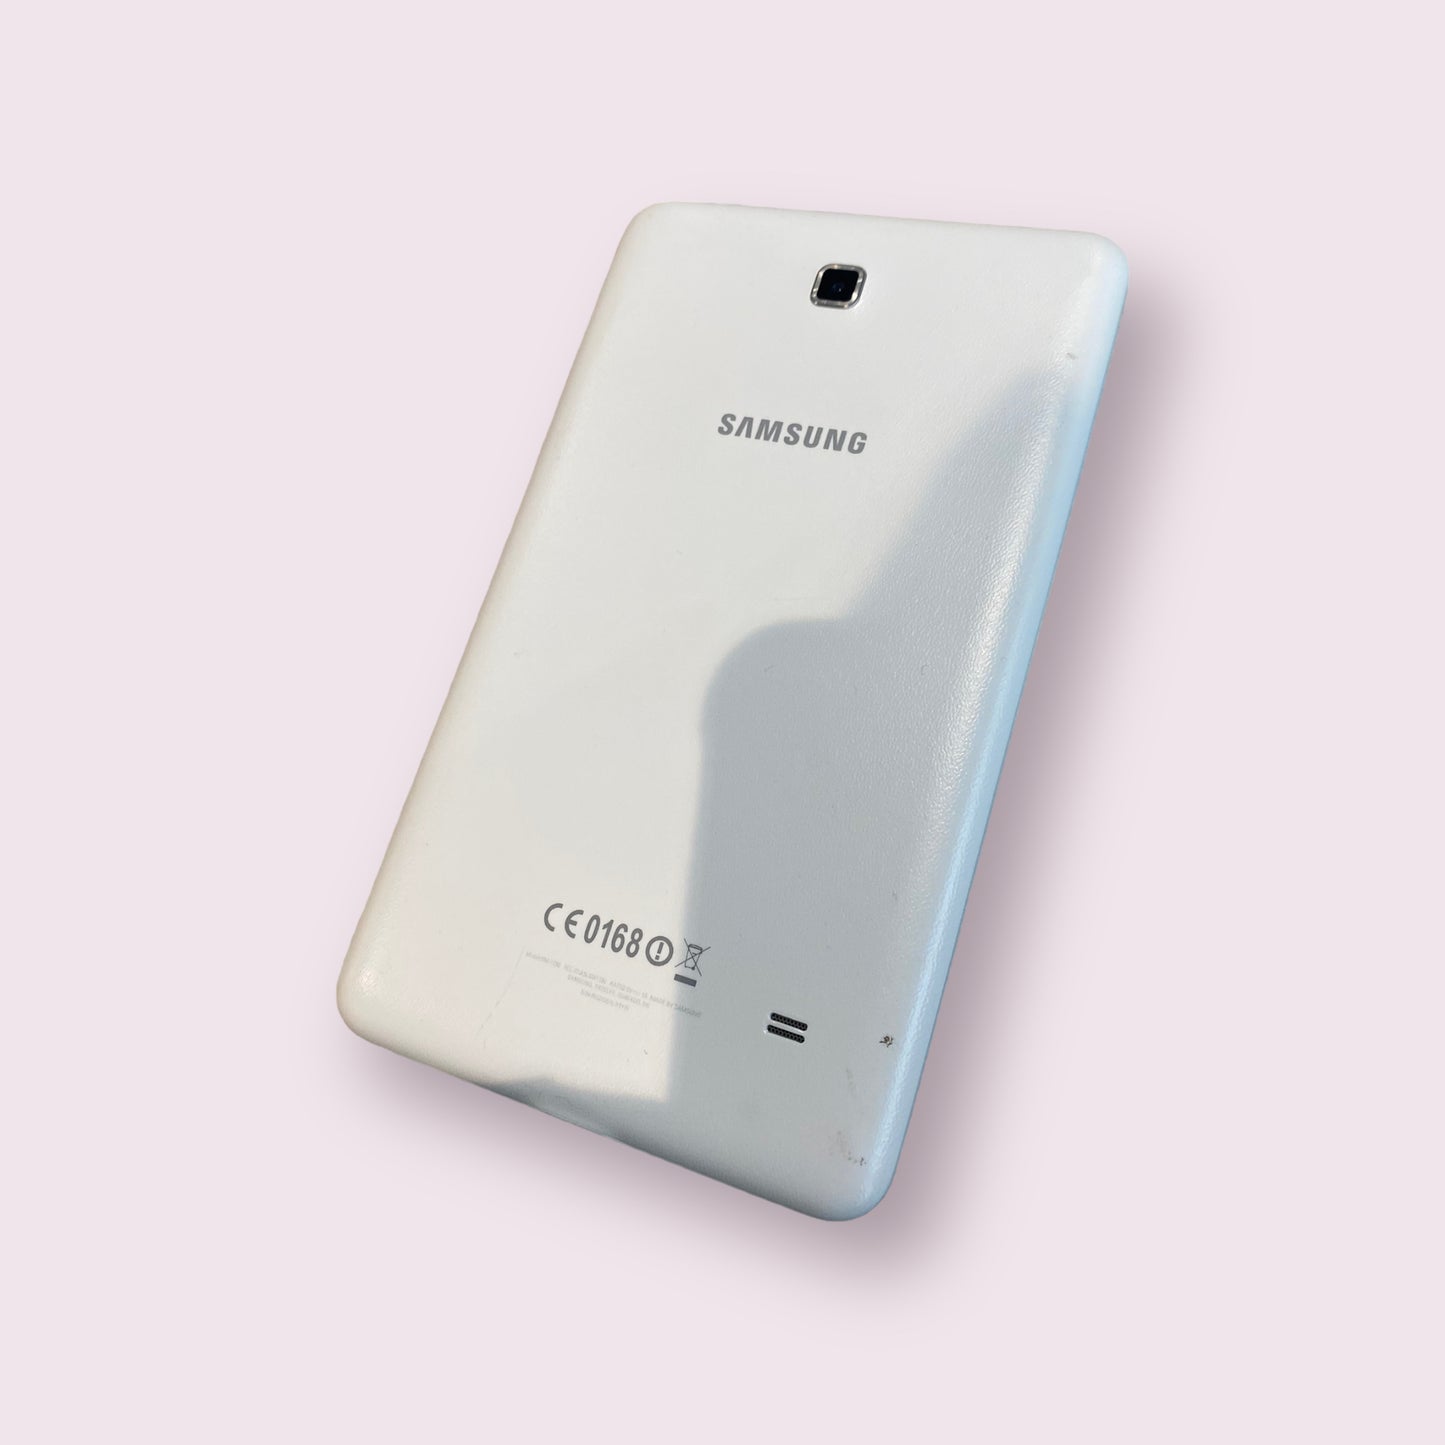 Samsung Galaxy TAB 4 7" 8GB SM-T230 2014 white Tablet - WIFI - Grade B